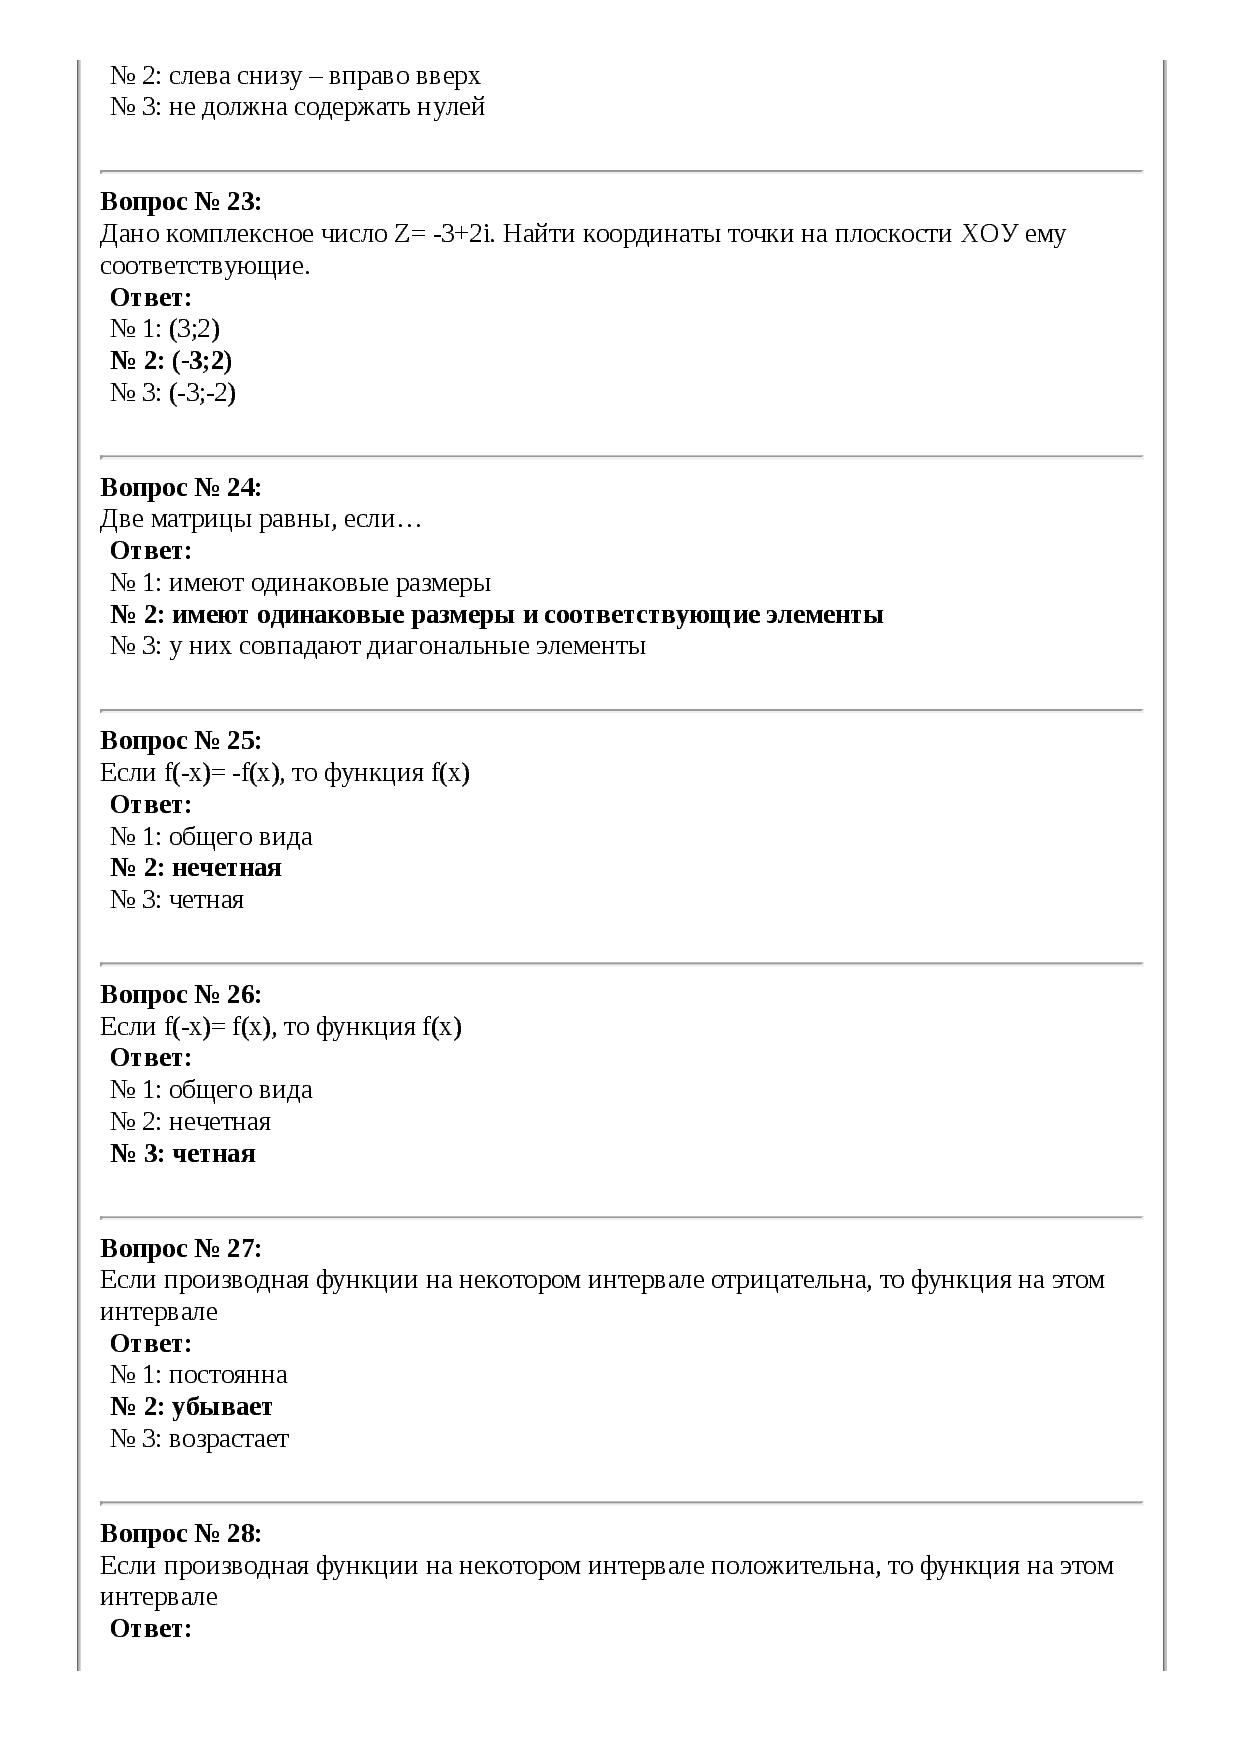 Зачетные тестовые задания по дисциплине ЕН.01 Элементы высшей математики специальность 09.02.03 Программирование в компьютерных системах